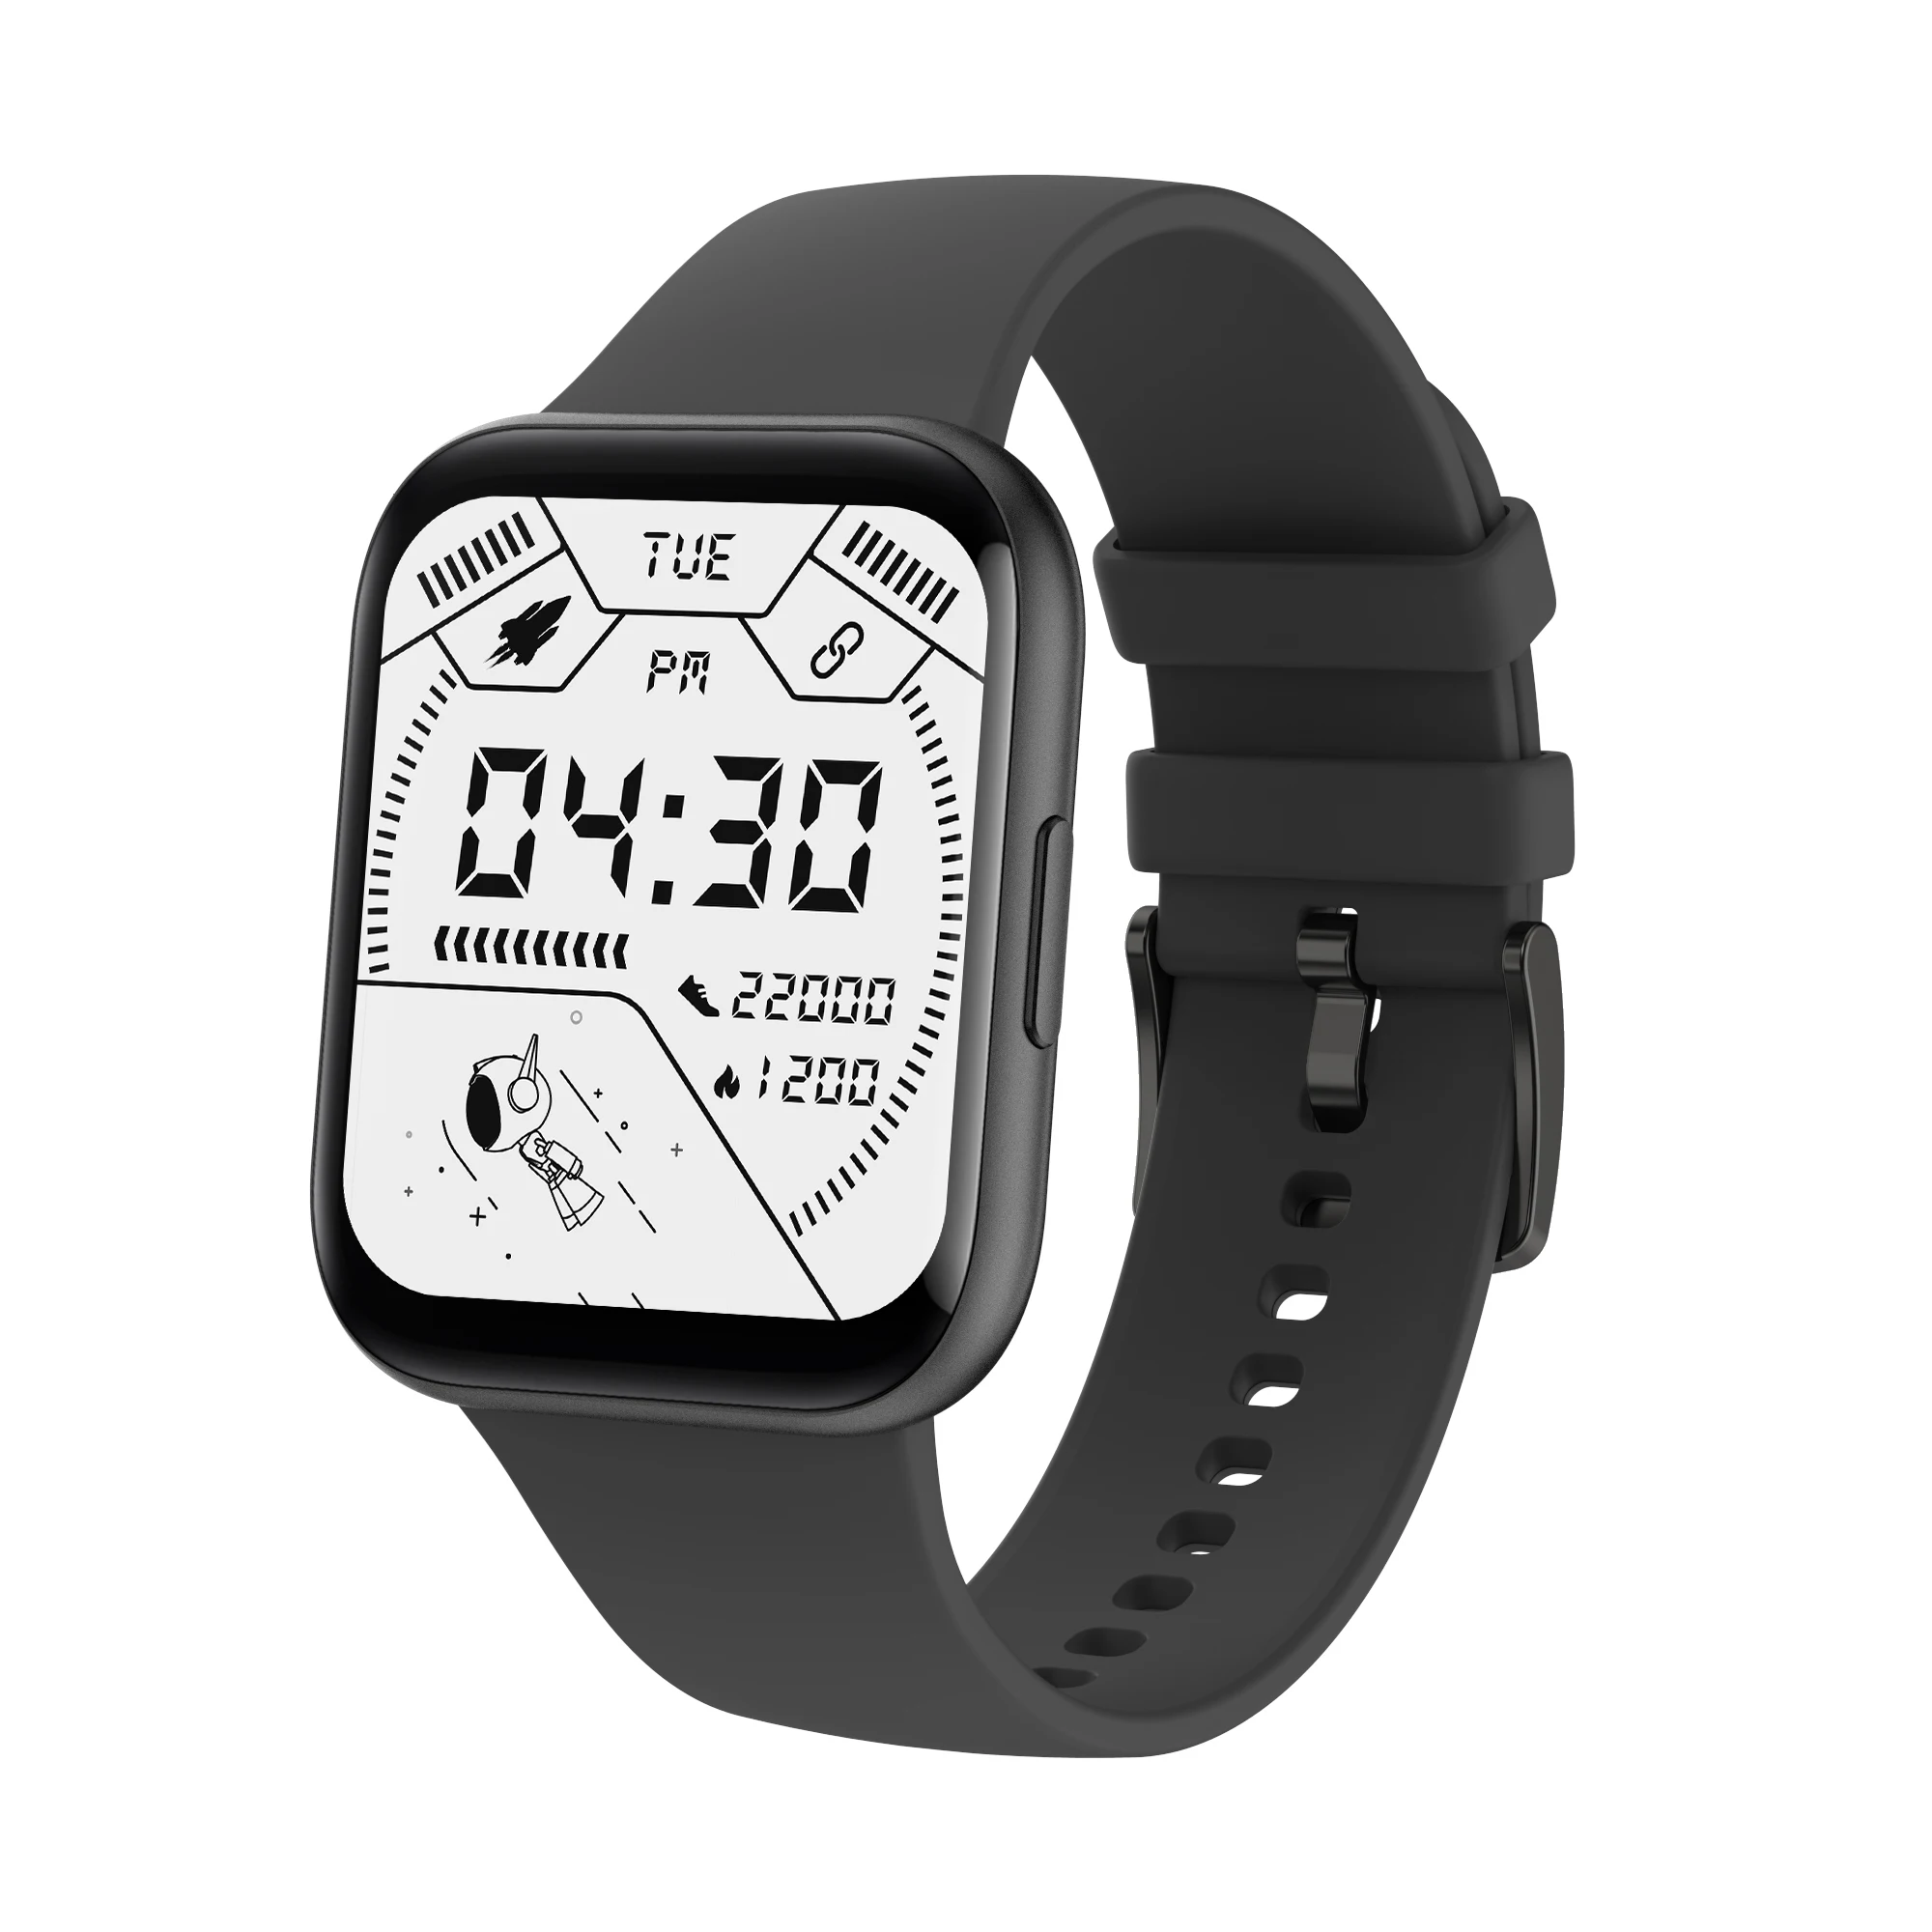 

SMARTOBY 1.69 inch Reloj Smart Watch 2021 Women IP68 Waterproof Heart Rate Fitness Tracker Men Sports Smart Watch with Play